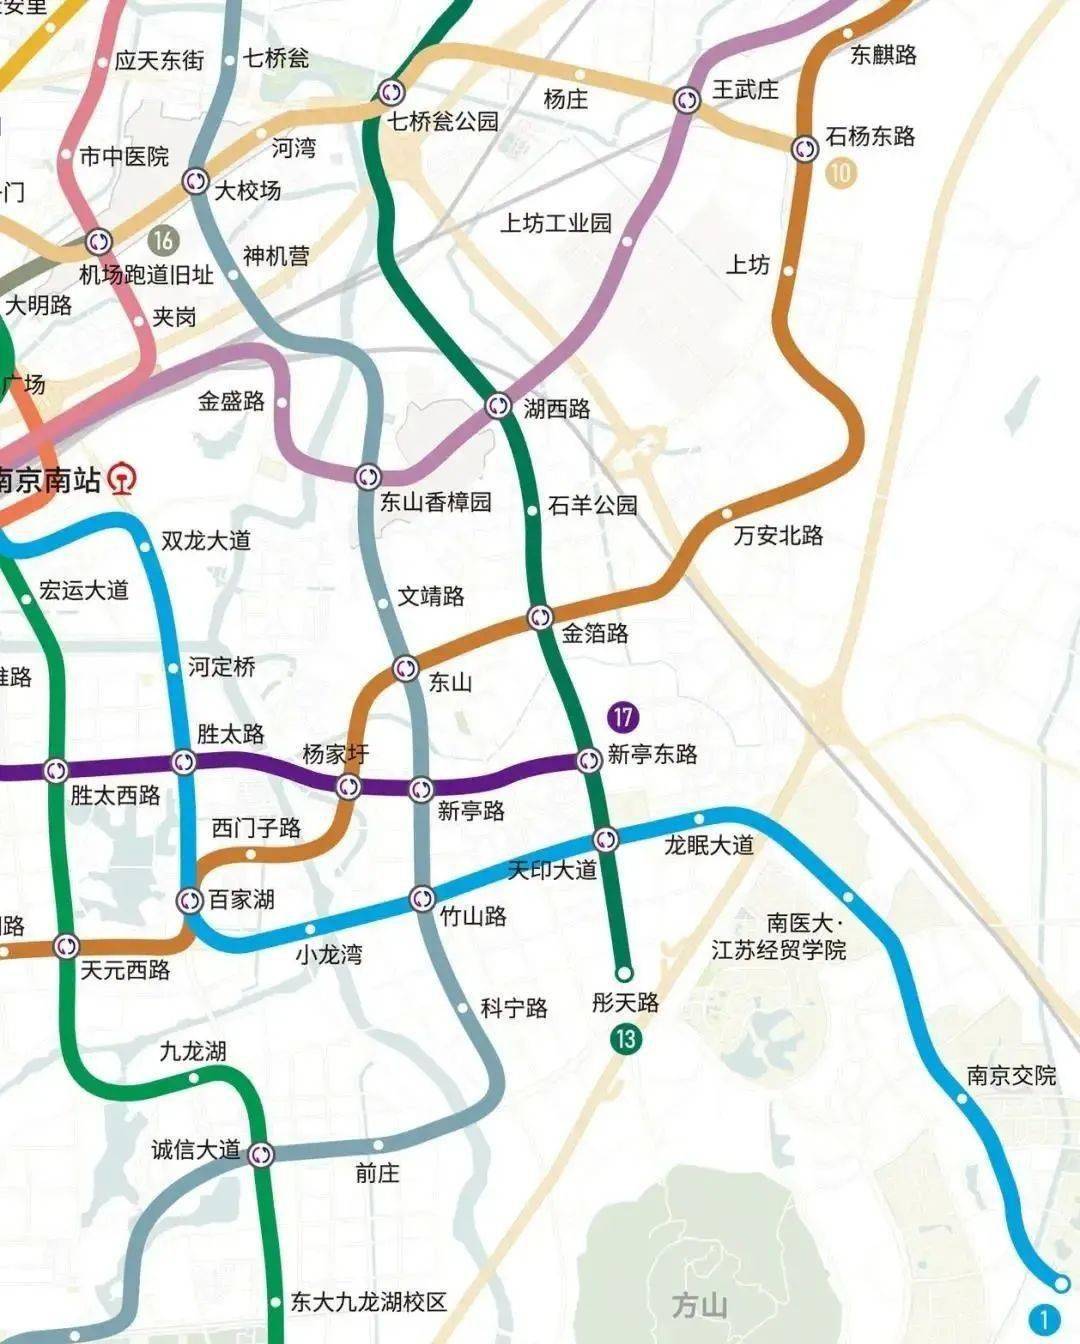 而从南京地铁最新的回复来看,13号线一期或将延伸到彤天路,如是方可